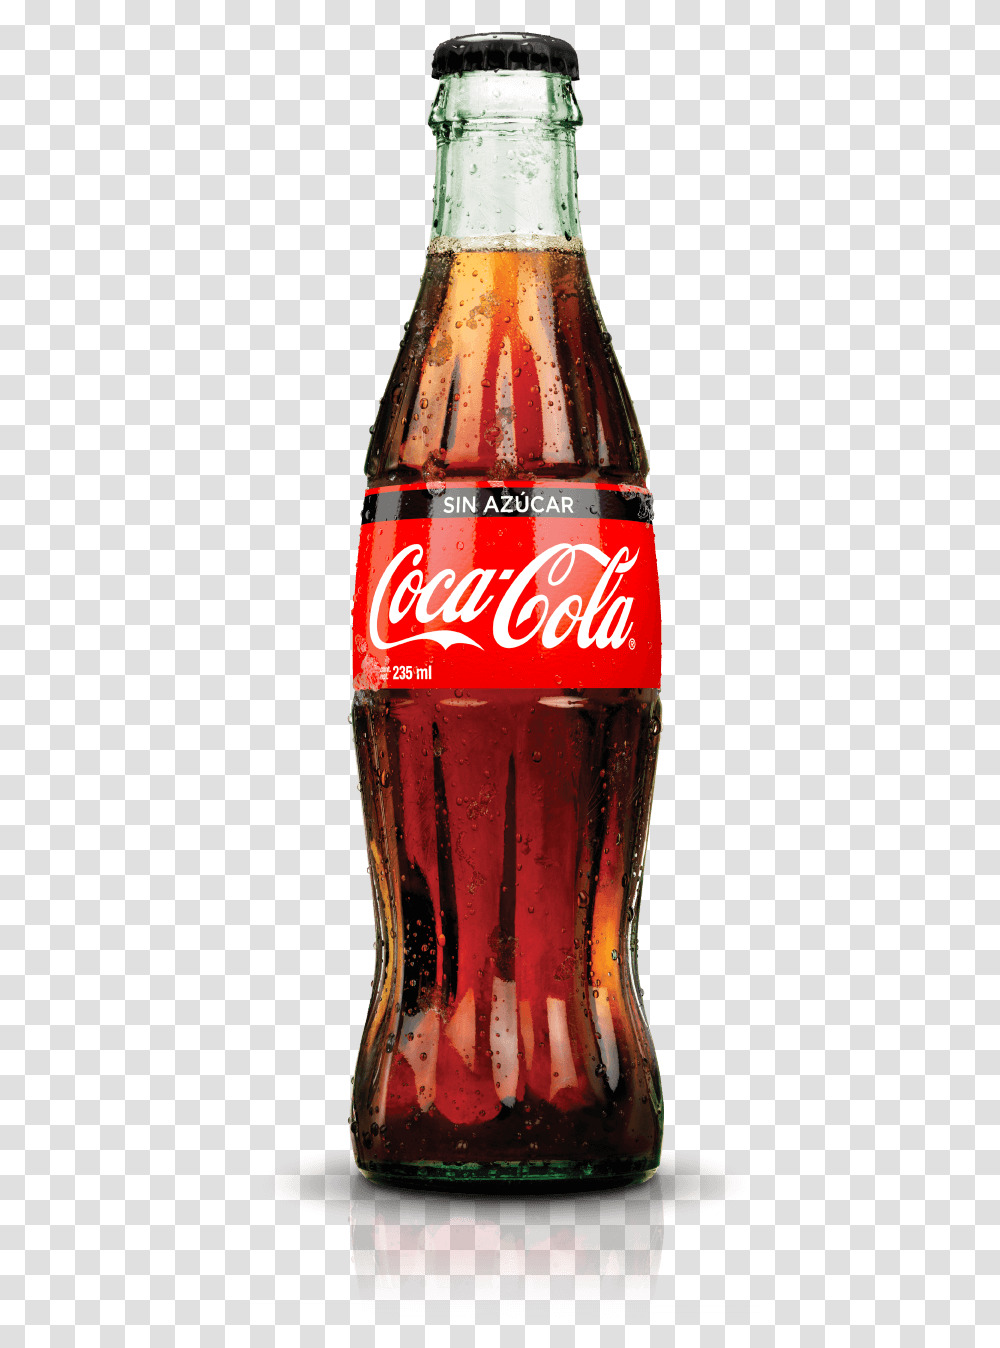 Diet Coke Bottle Glass Coca Cola Bottle, Beverage, Drink, Soda Transparent Png